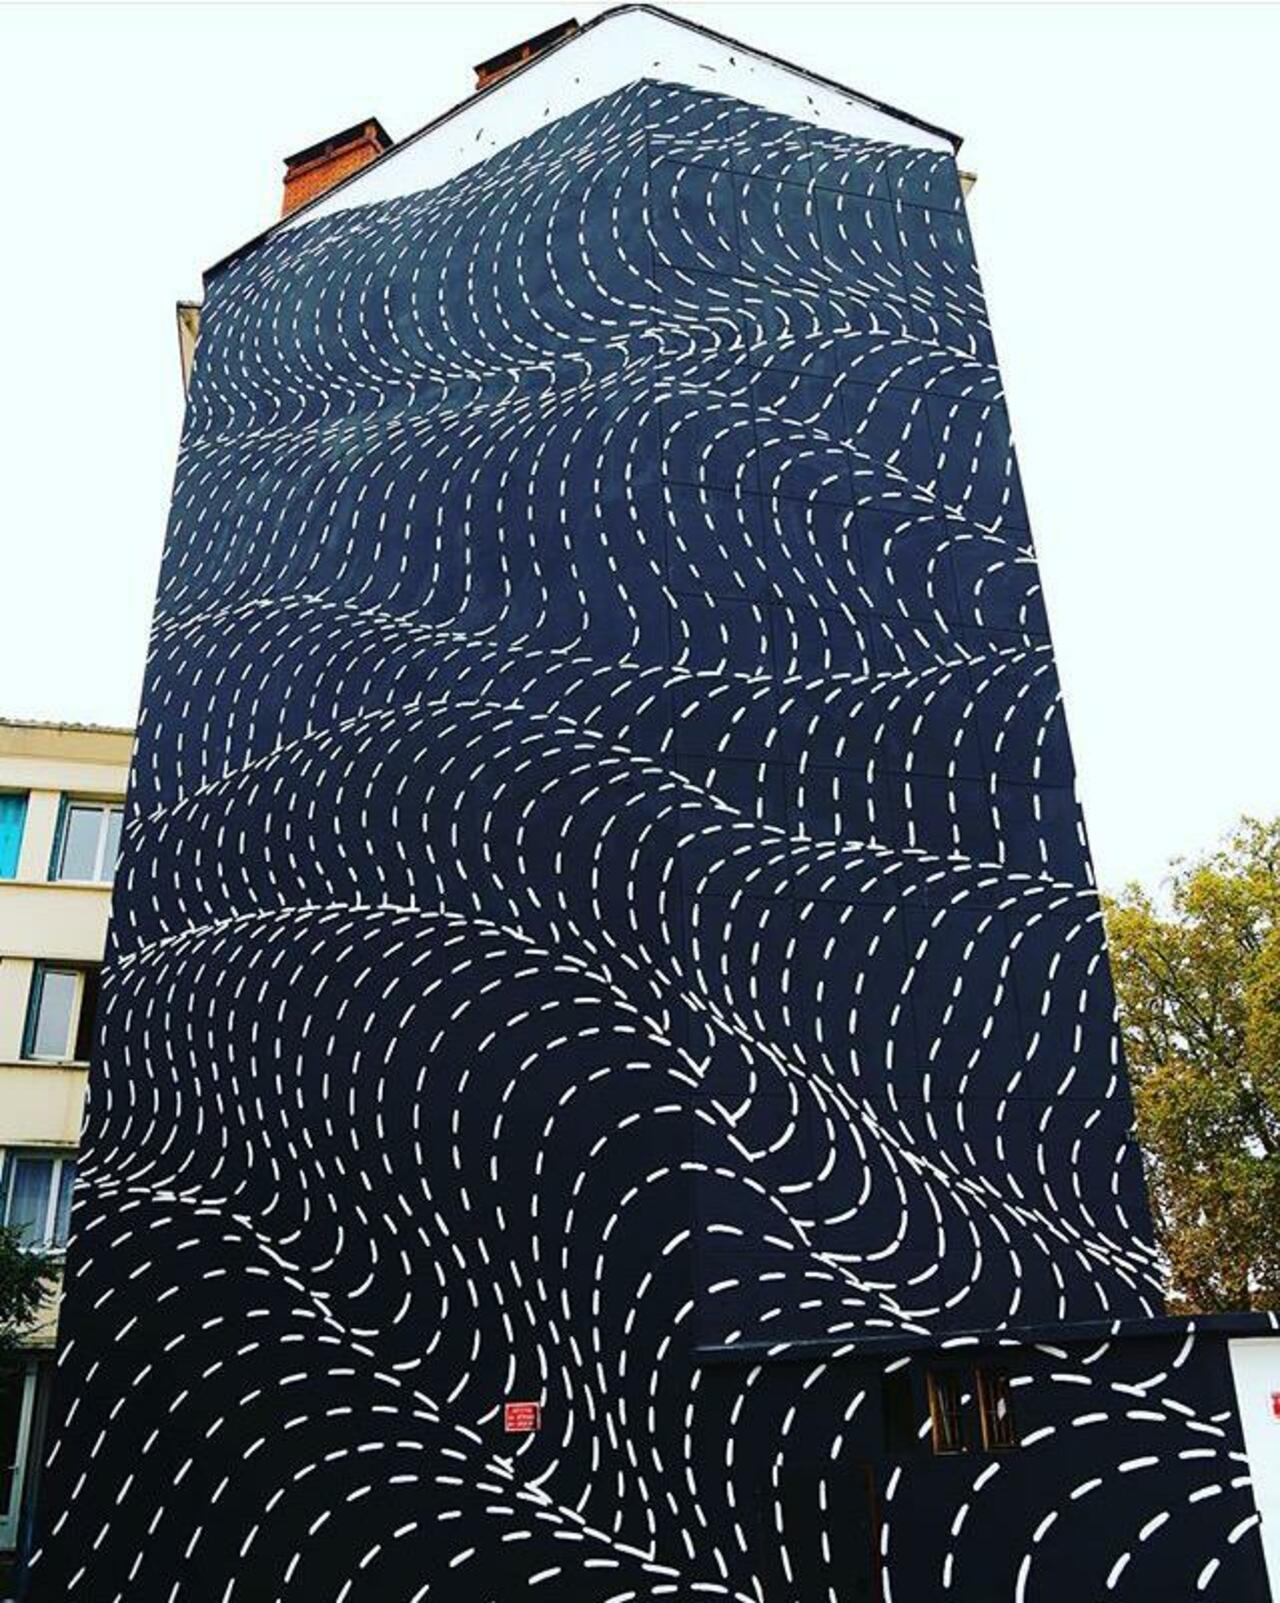 New Street Art by Brendan Monroe's for WOPS ! Festival in Toulouse, France. 

#art #graffiti #mural #streetart https://t.co/2nXq4Z5CZo